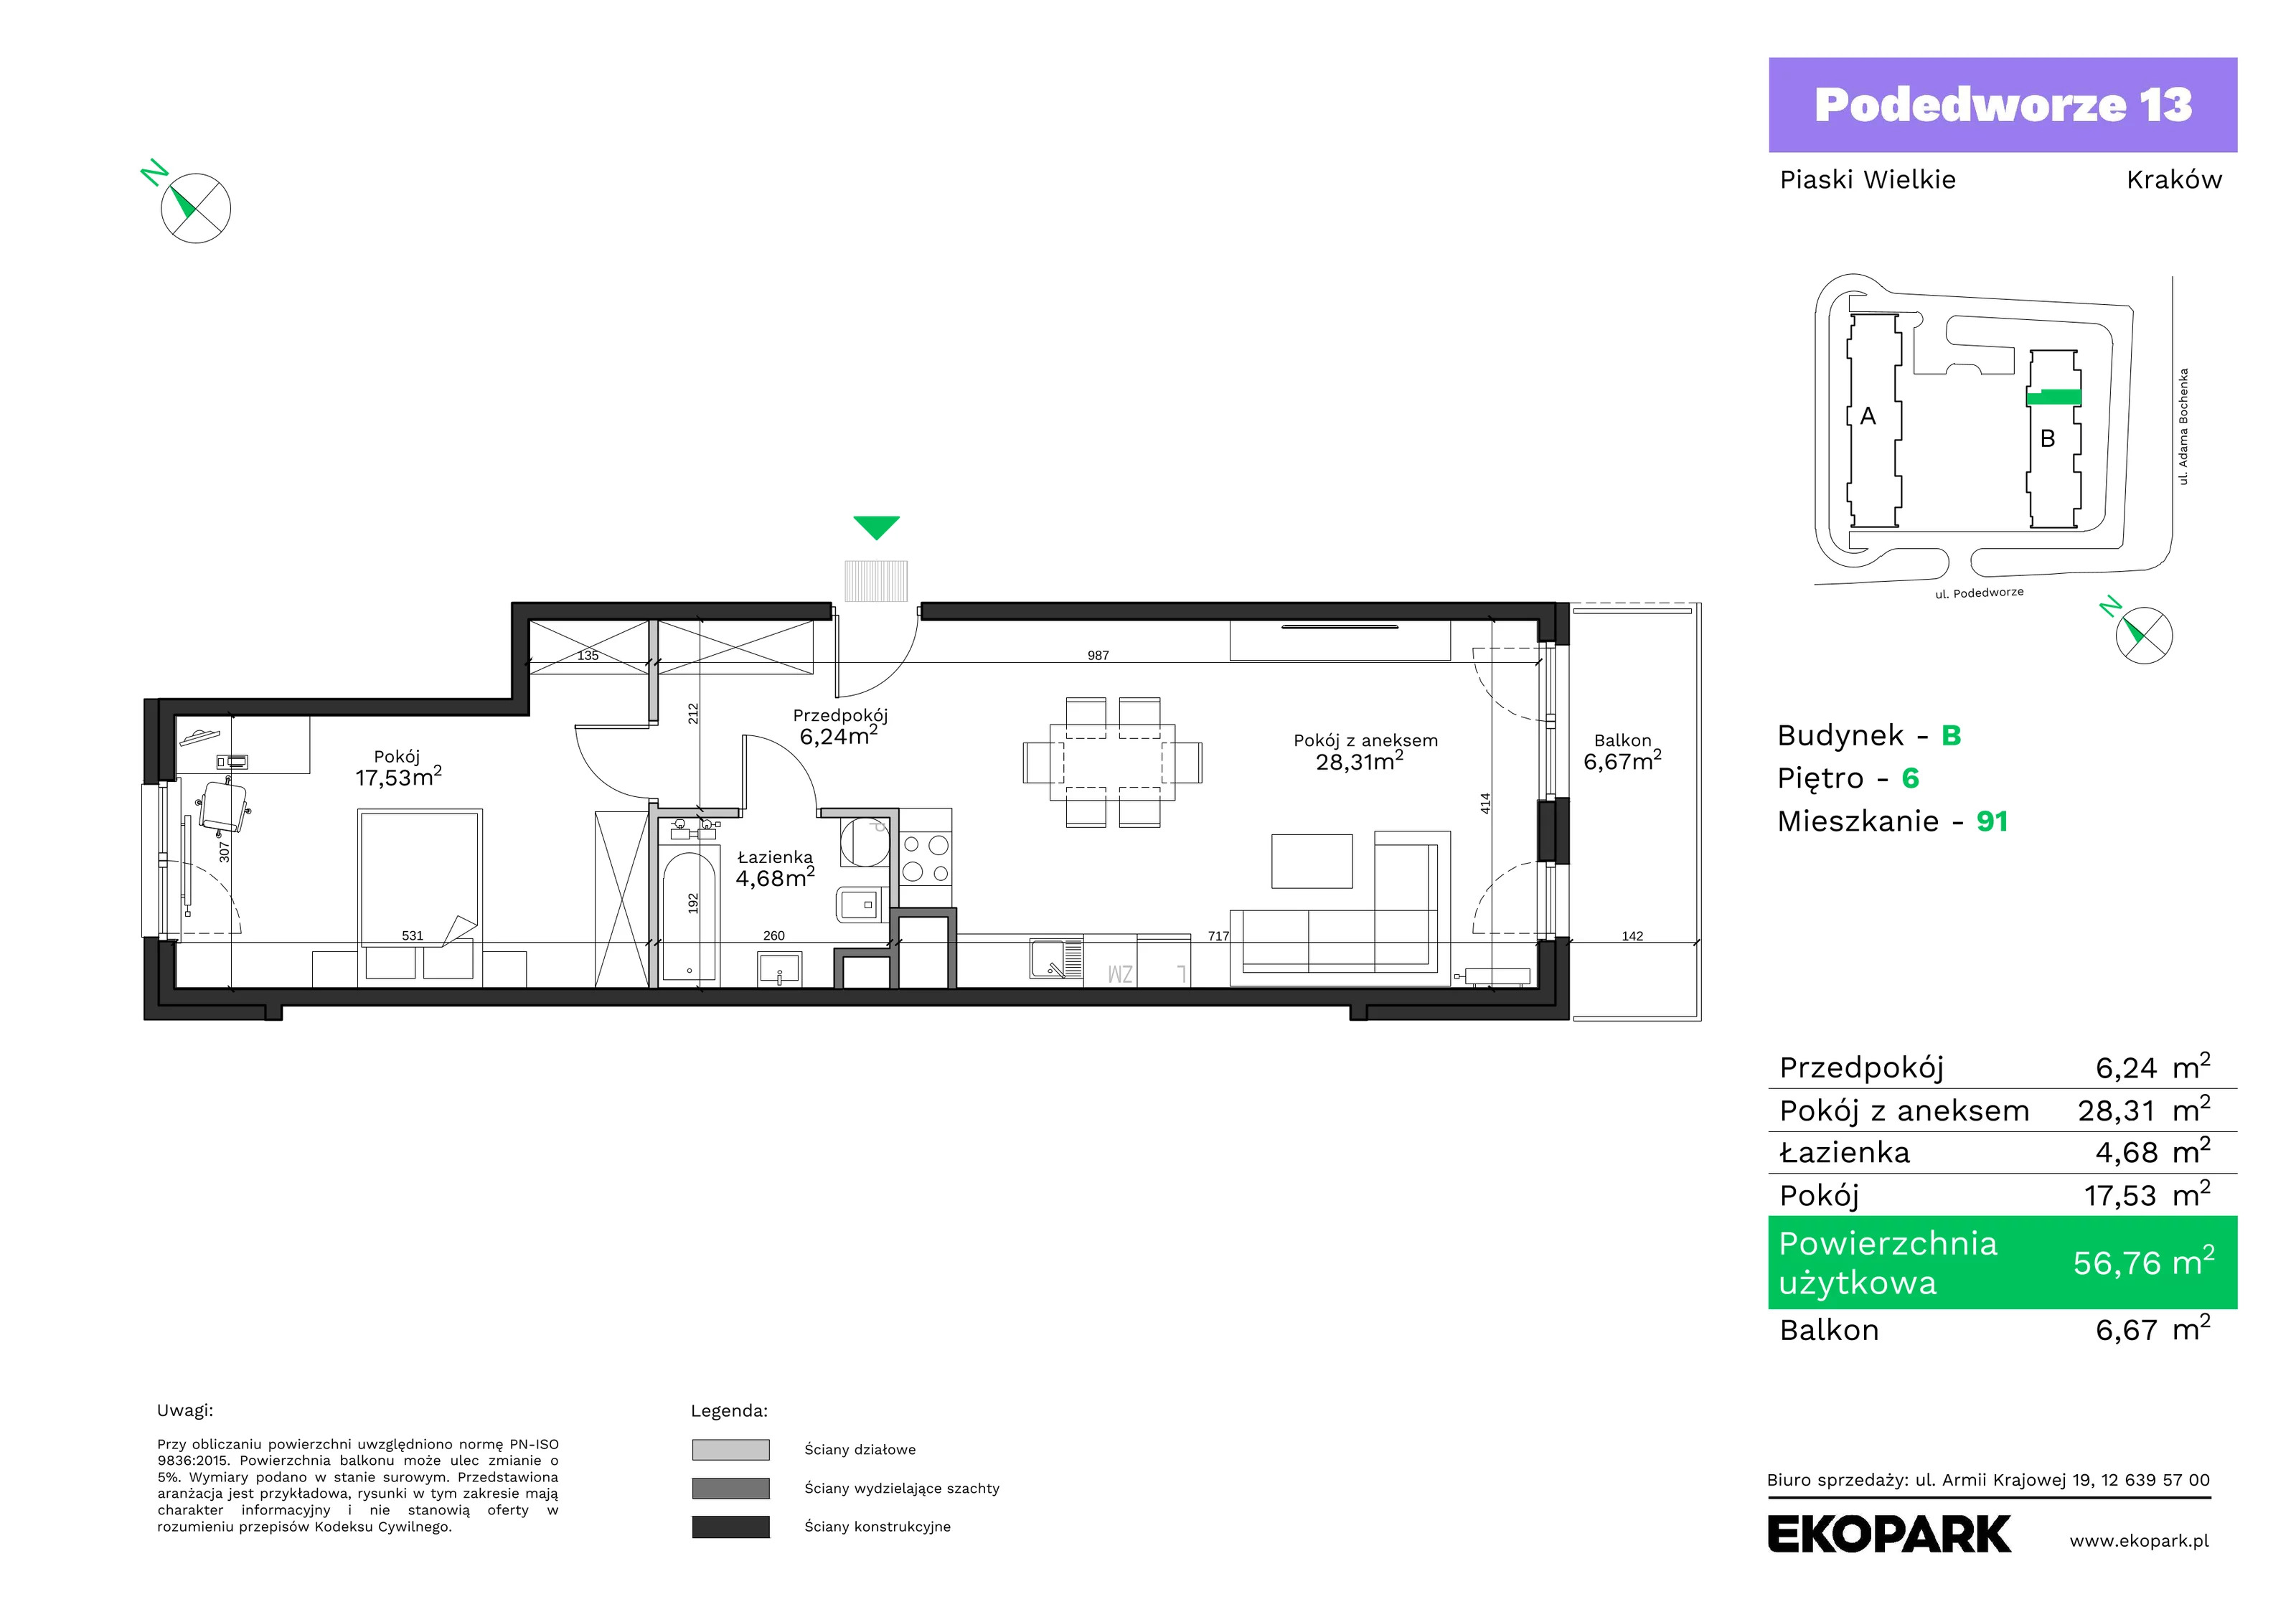 Mieszkanie 56,76 m², piętro 6, oferta nr B91, Podedworze 13, Kraków, Podgórze Duchackie, Piaski Wielkie, ul. Podedworze 13